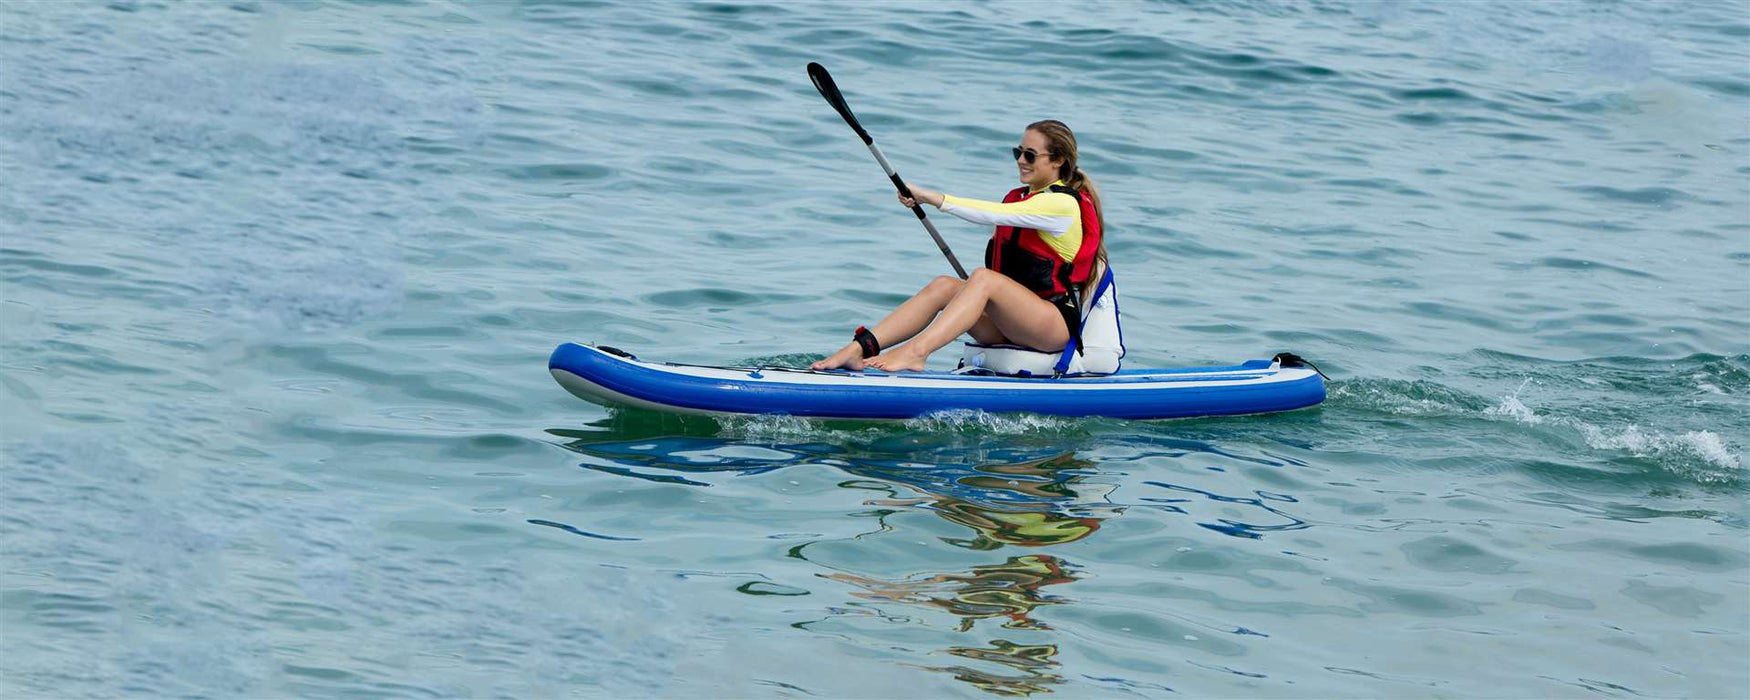 Sea Eagle LongBoard 11 Inflatable Paddleboard